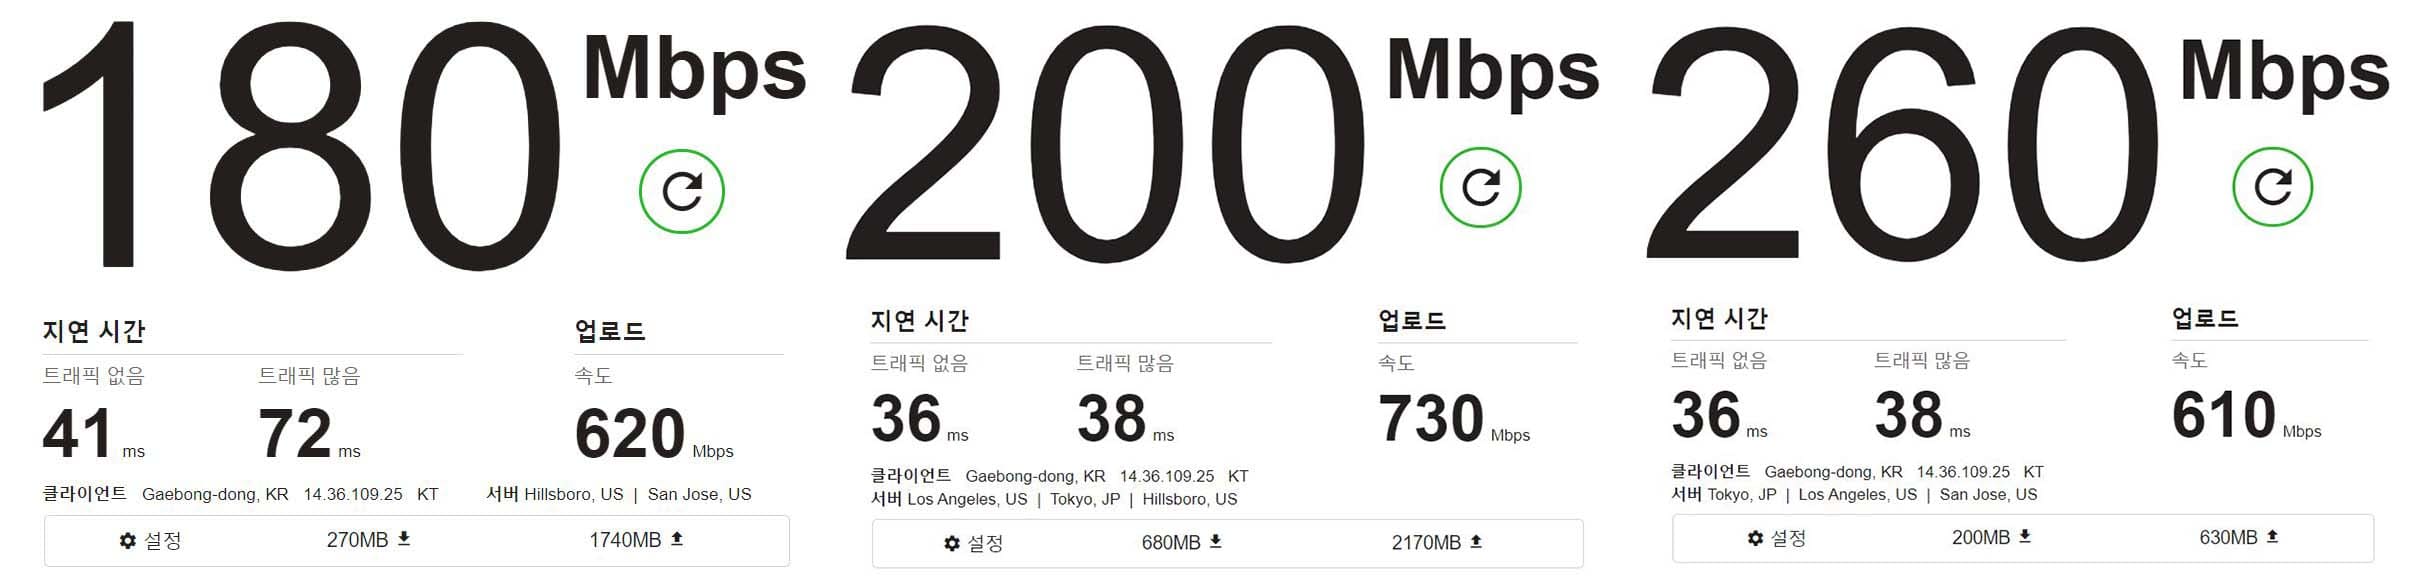 패스트닷컴-인터넷-속도측정-결과-비교